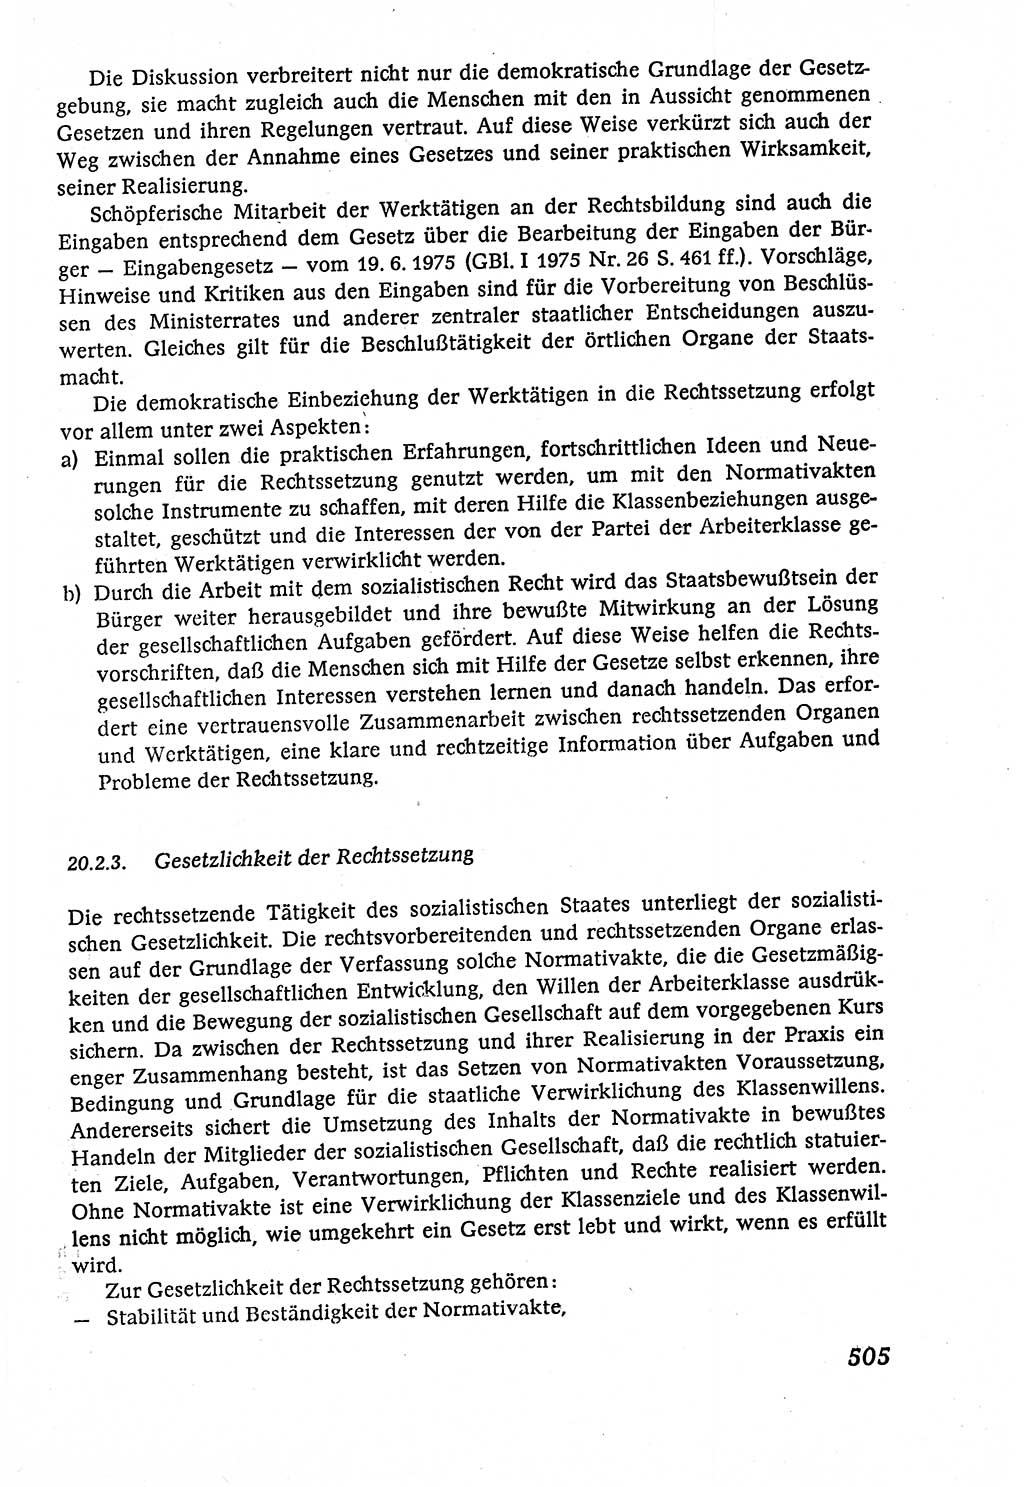 Marxistisch-leninistische (ML) Staats- und Rechtstheorie [Deutsche Demokratische Republik (DDR)], Lehrbuch 1980, Seite 505 (ML St.-R.-Th. DDR Lb. 1980, S. 505)